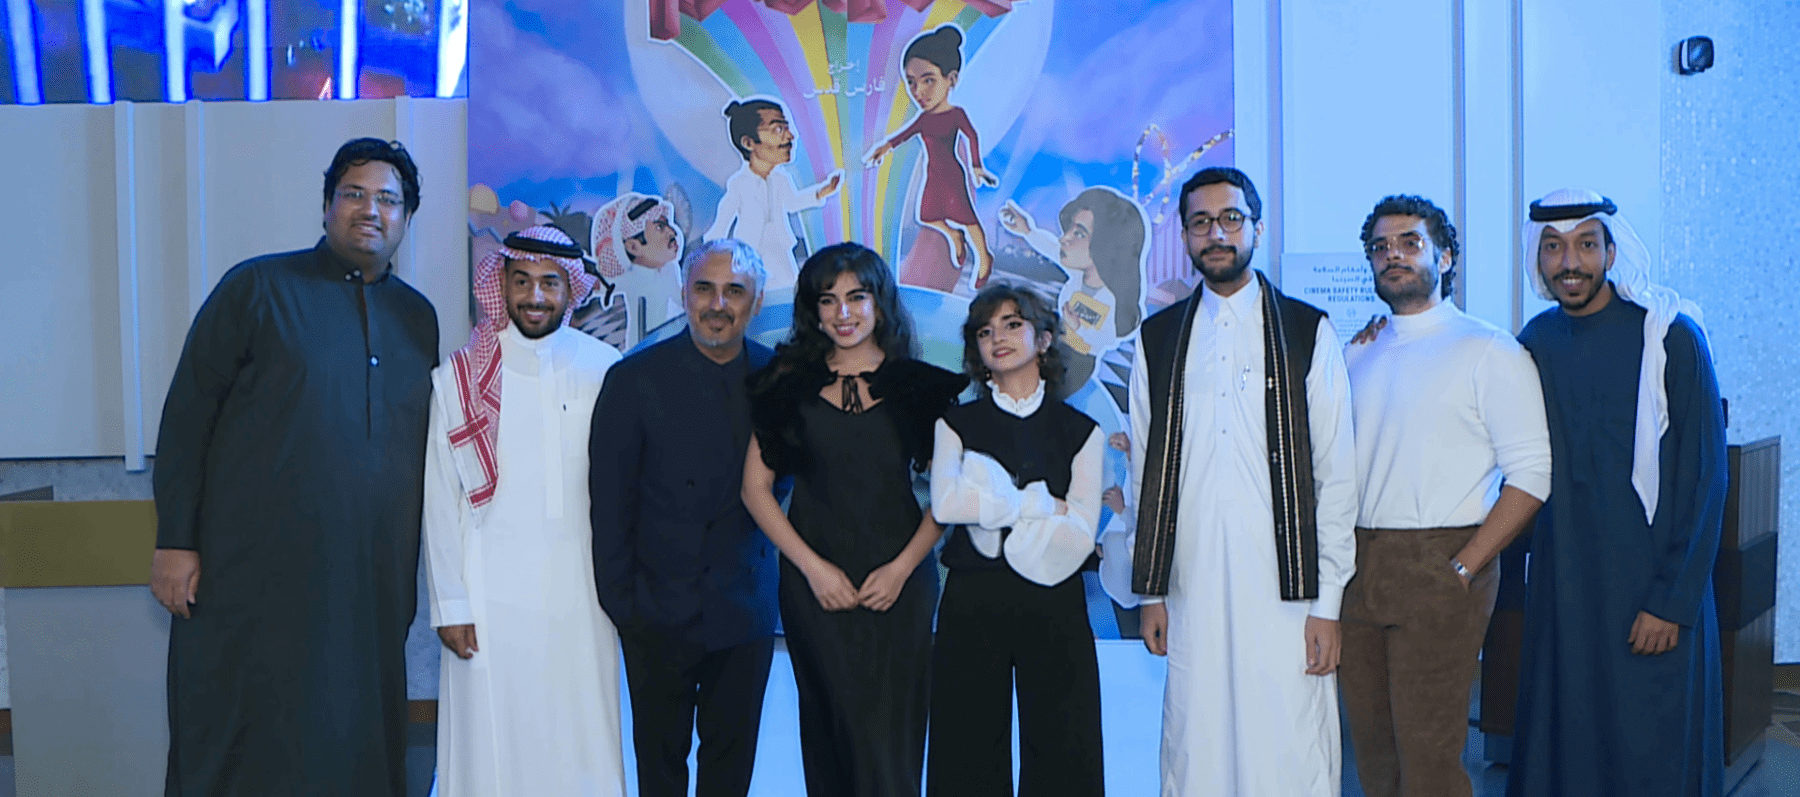 العرض الخاص لفيلم أحلام العصر في الإمارات